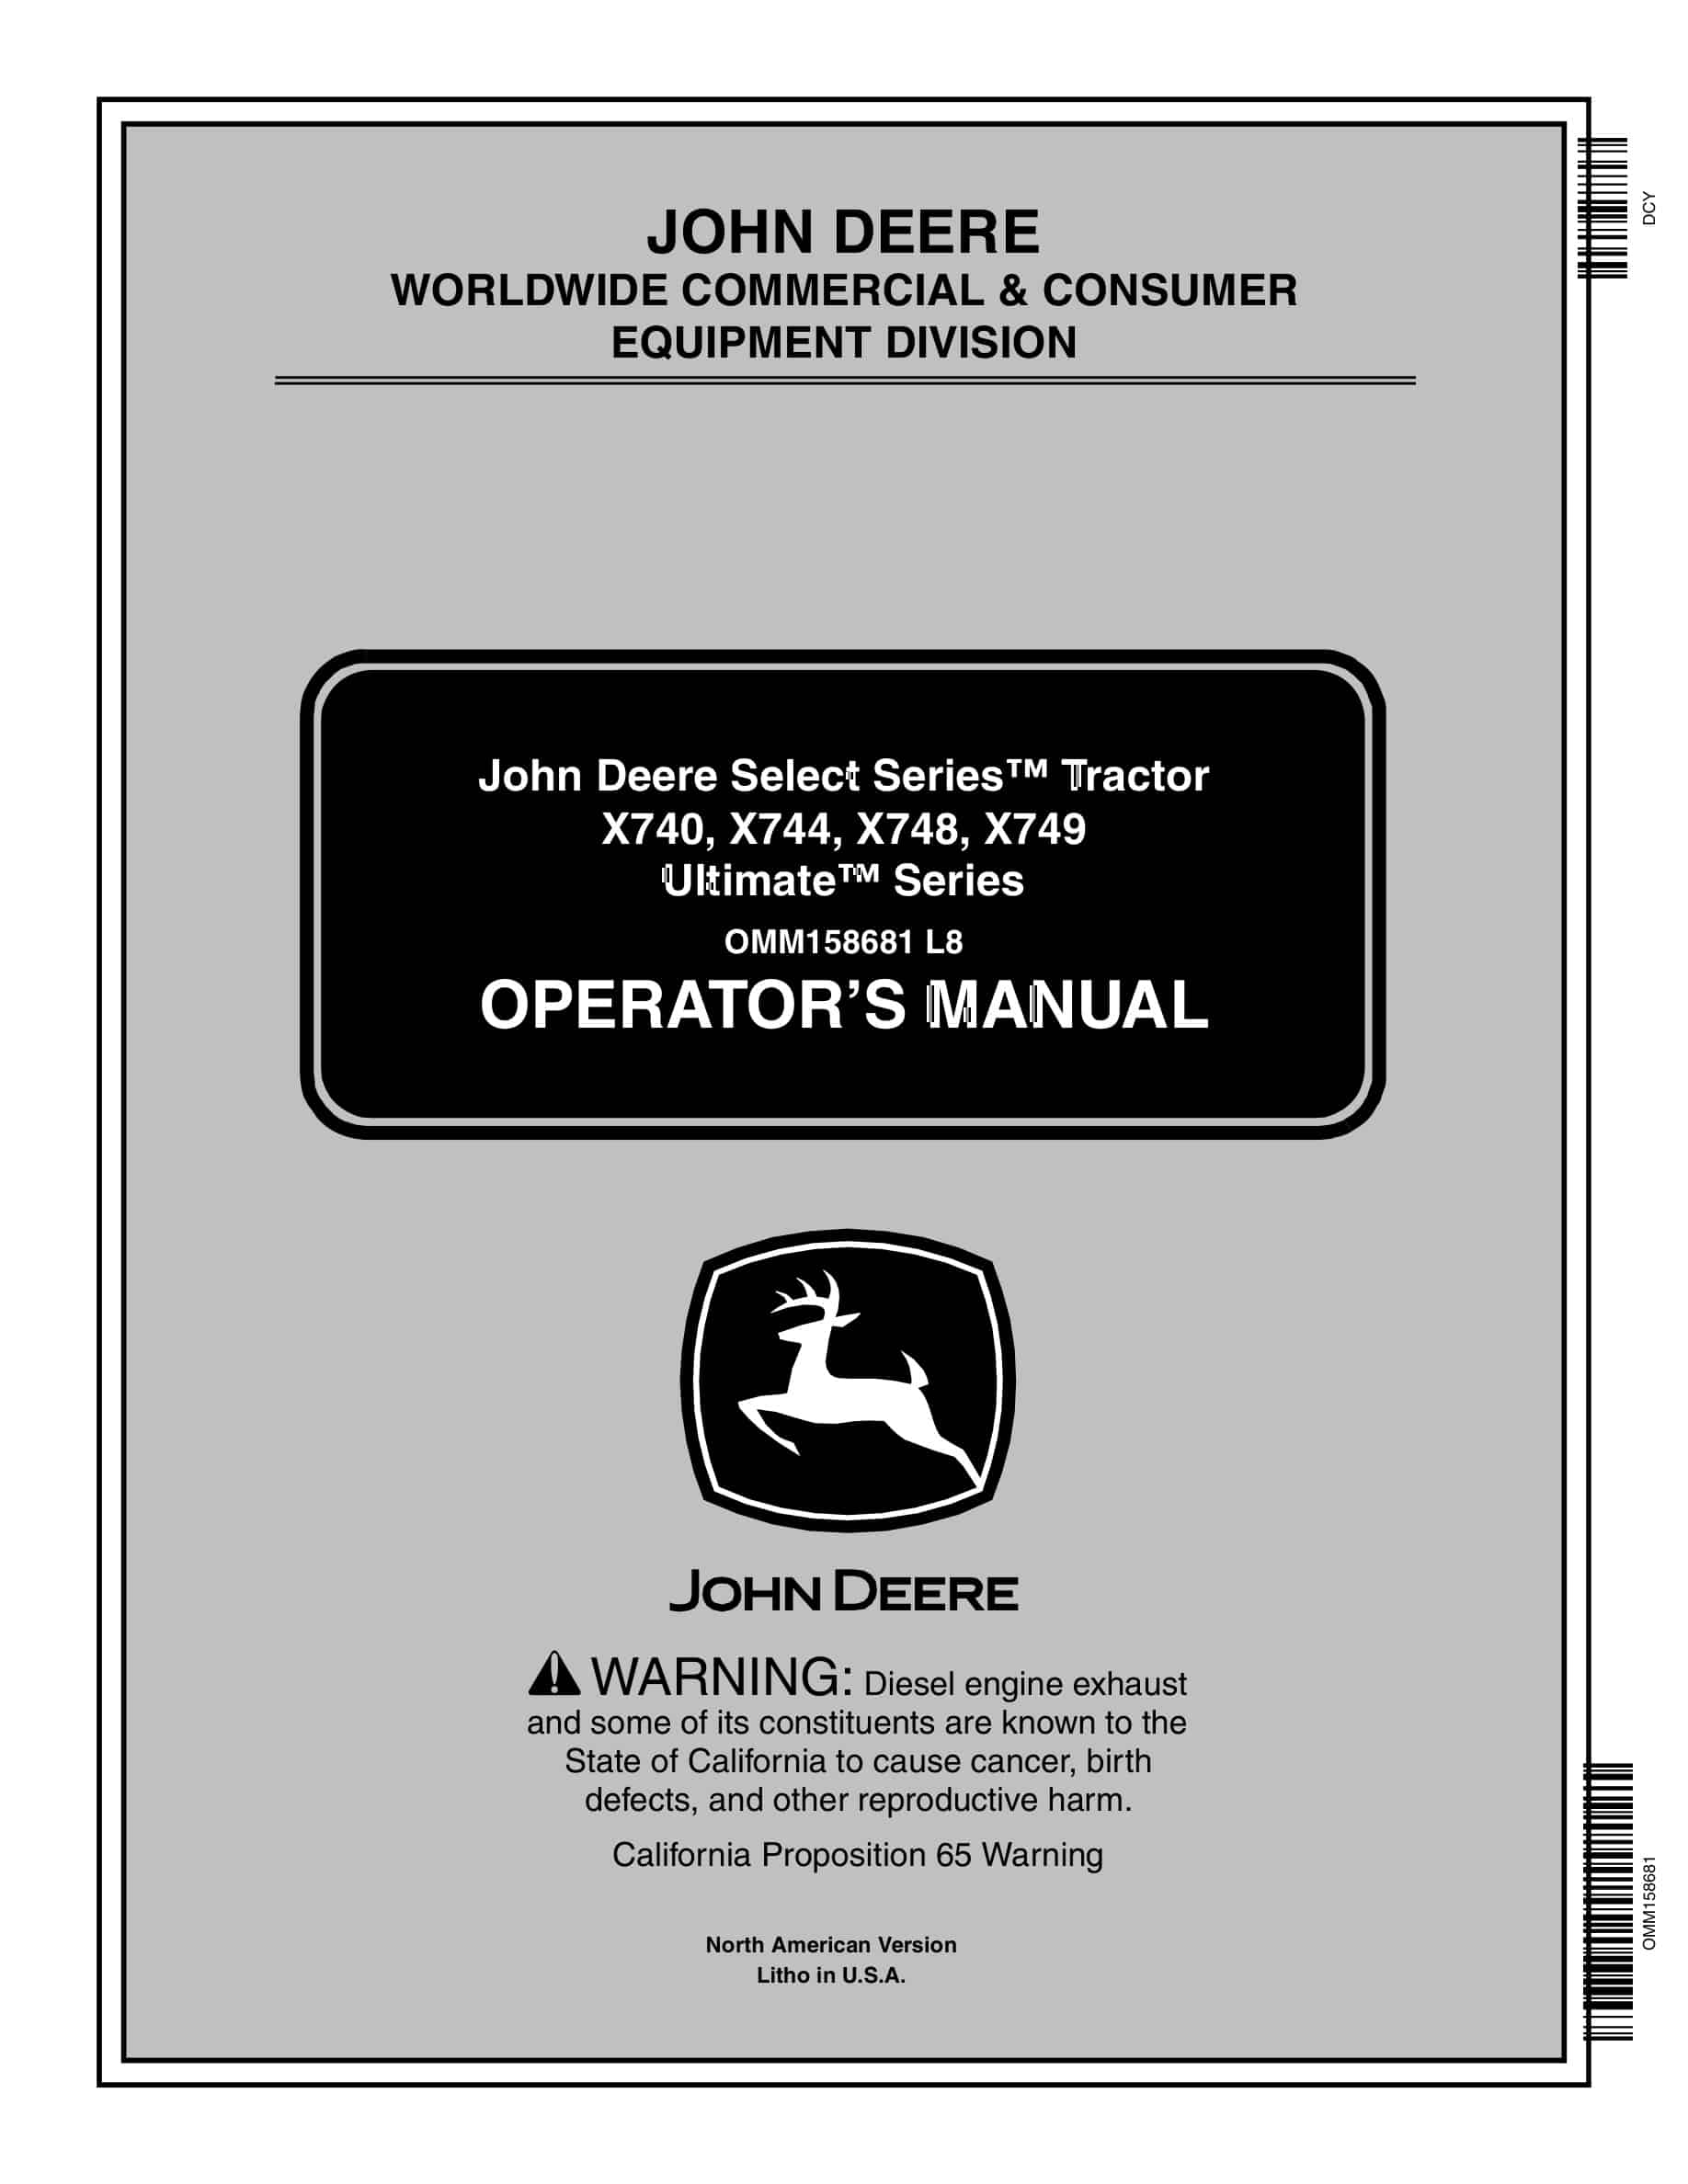 John Deere X740, X744, X748, X749 Tractor Operator Manual OMM158681-1